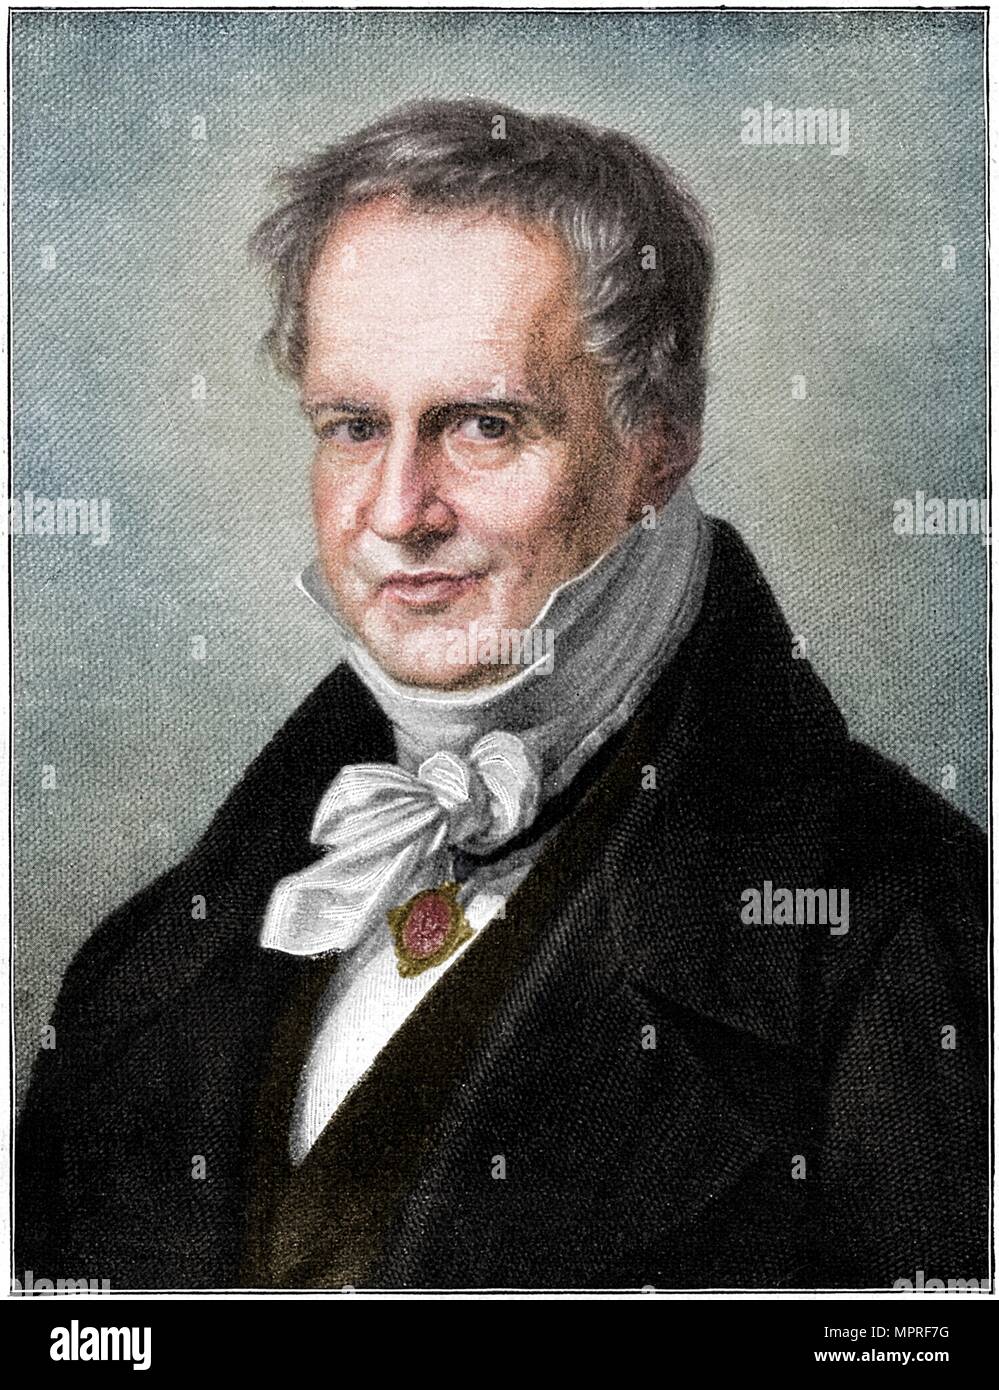 Alexander von Humboldt, Prussian naturalist and explorer, (1900). Artist: Unknown. Stock Photo